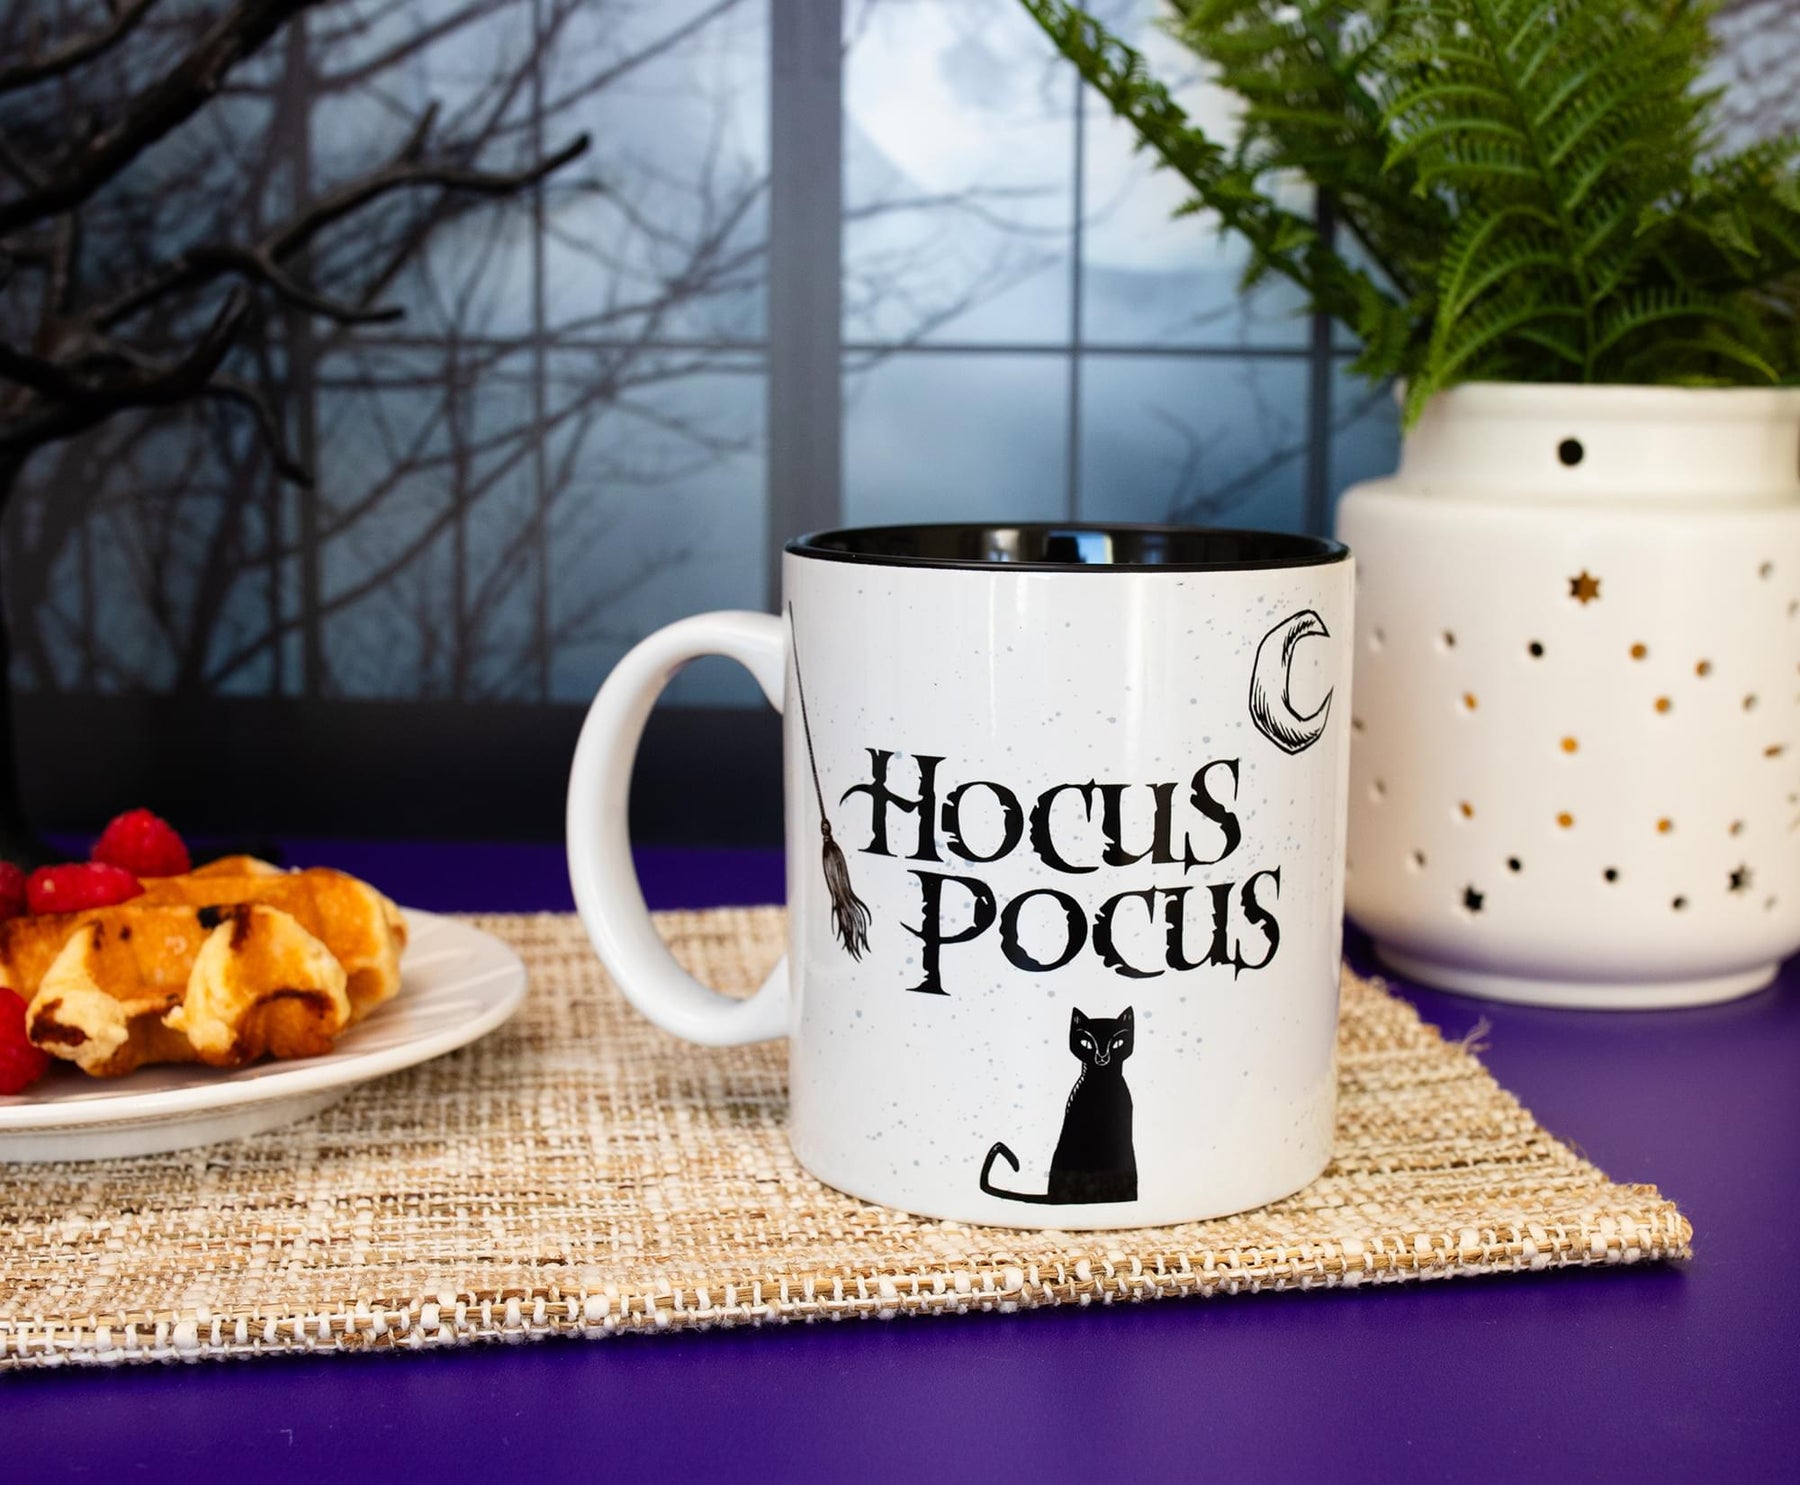 Disney Hocus Pocus "Makes Me Sick" Ceramic Mug | Holds 20 Ounces